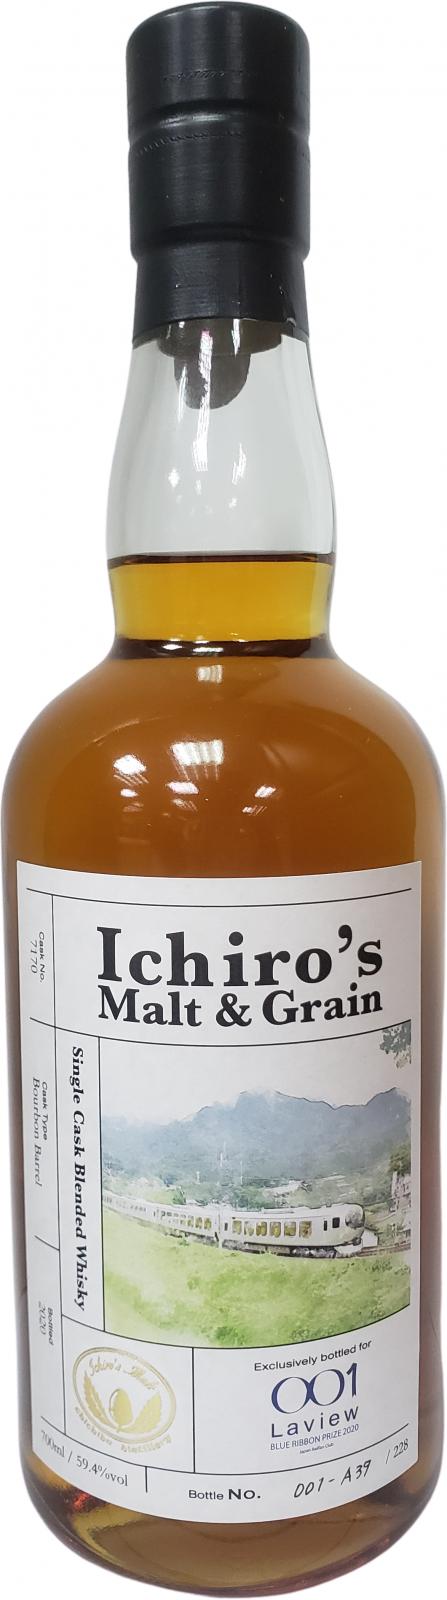 Ichiro's Malt & Grain Single Cask Blended Whisky Bourbon Barrel #7170 59.4% 700ml